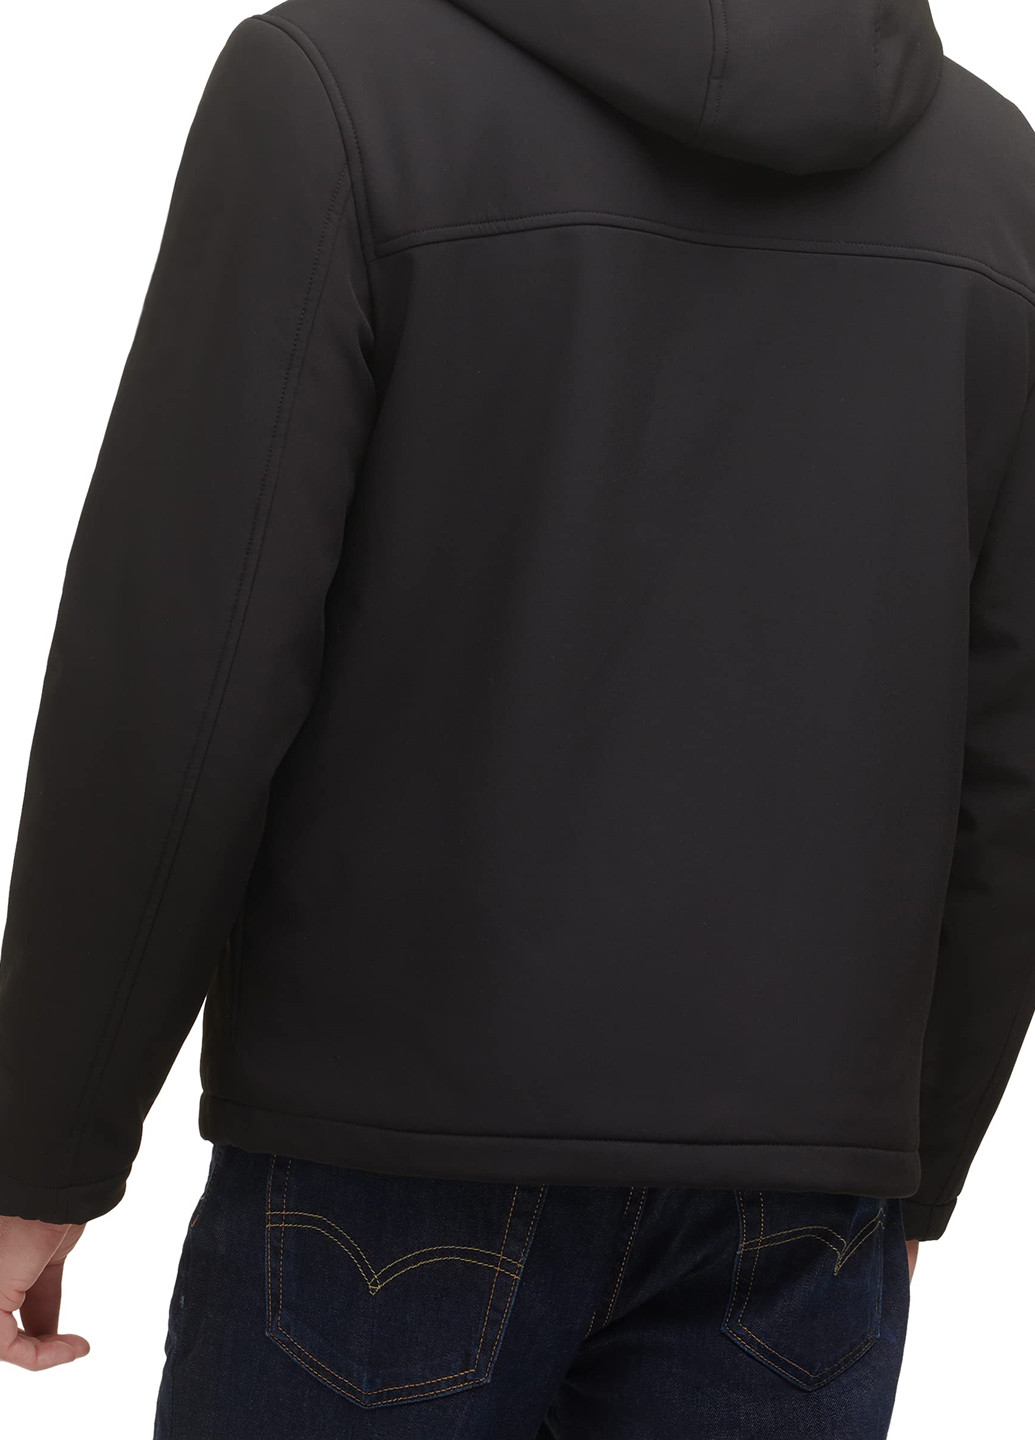 Черная демисезонная куртка куртка-пиджак Levi's